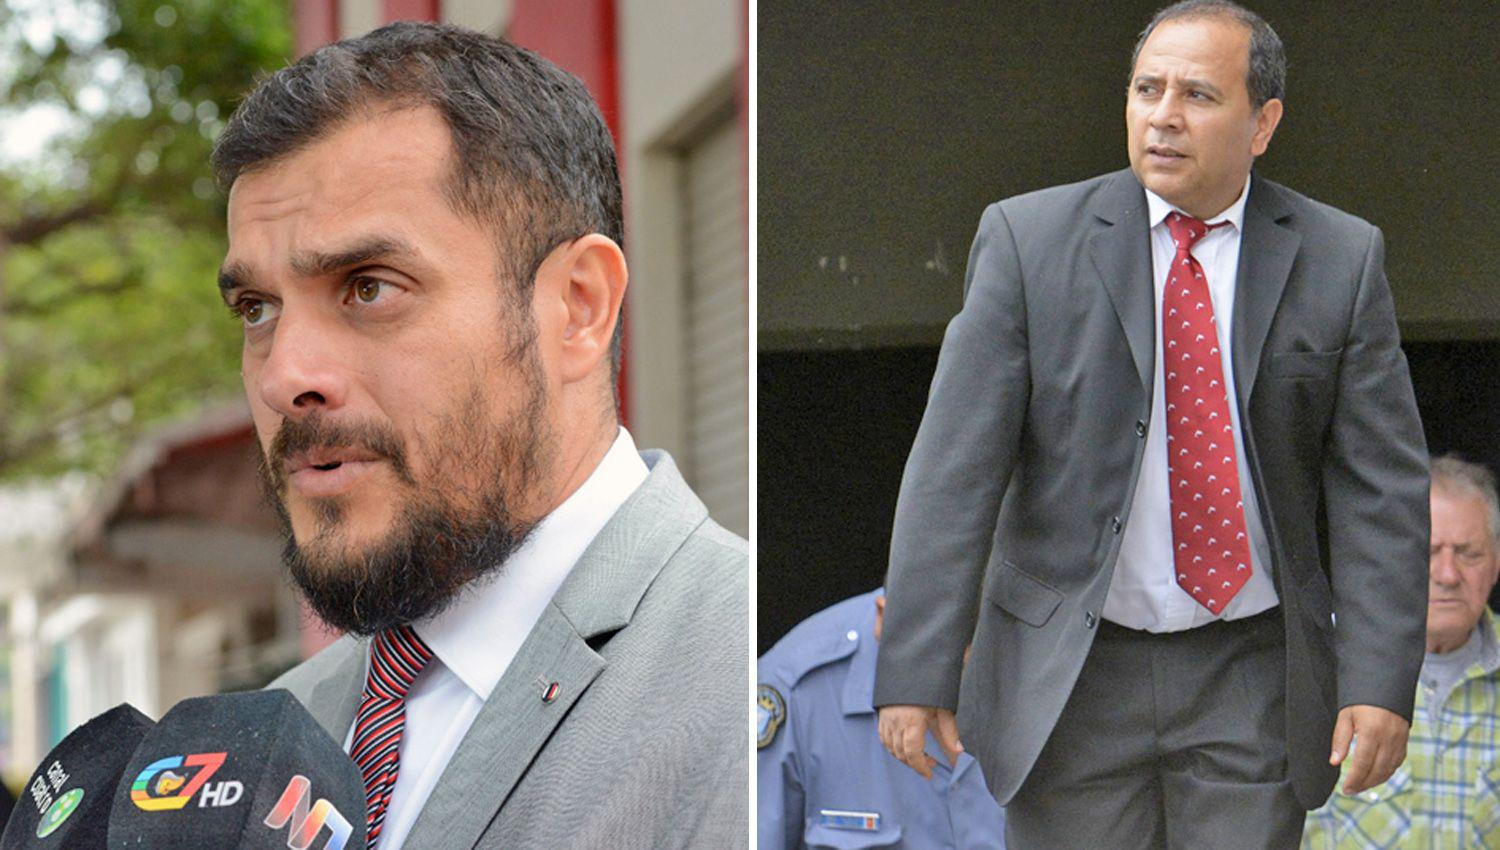 Los Dres Sergio Brand�n y Daniel Guzm�n abogados del otro implicado pedir�n que sea excarcelado y se revea su prisión preventiva